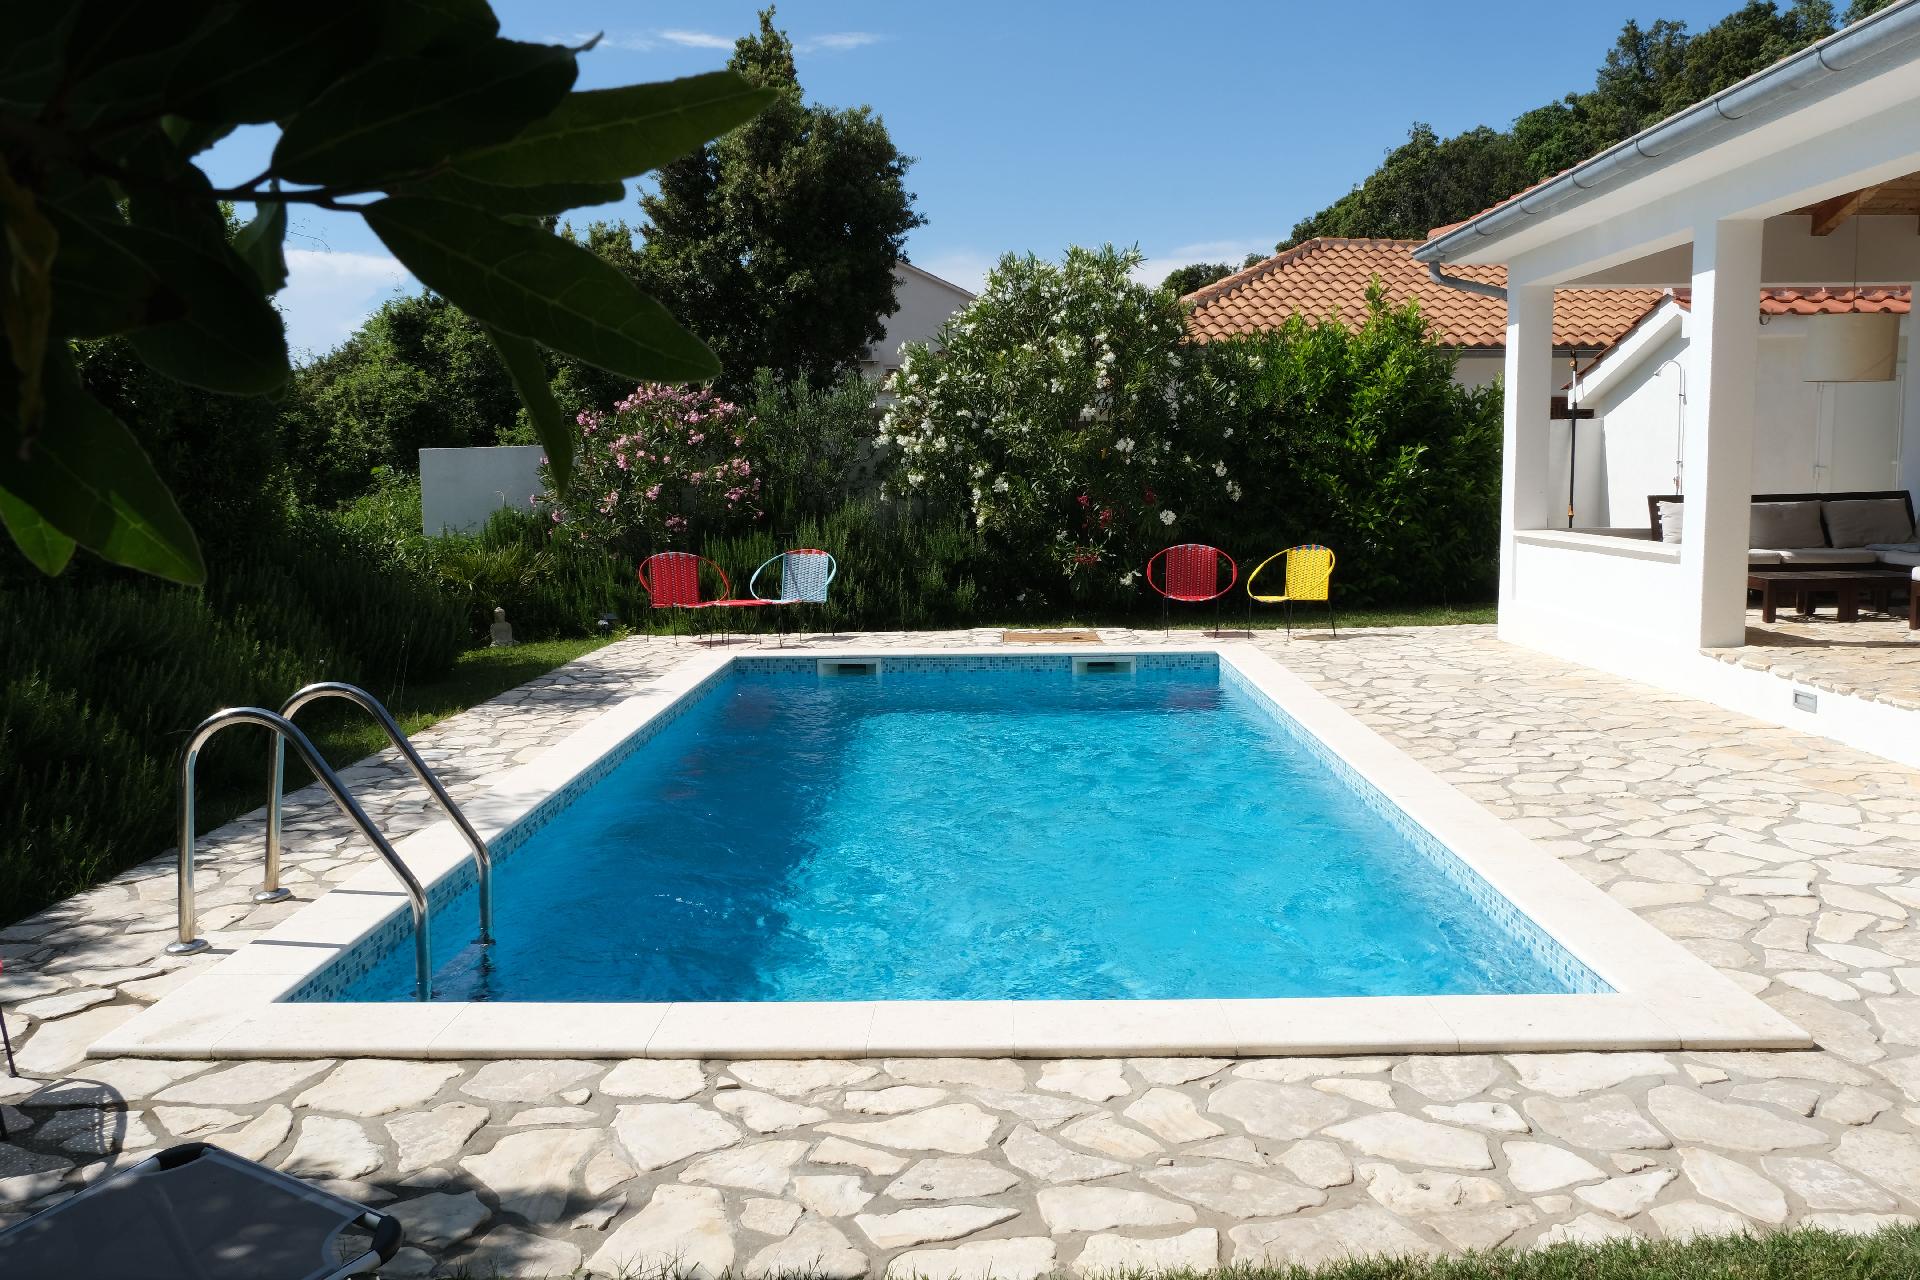 Modernes Ferienhaus mit Pool im Grünen Ferienhaus in Kroatien